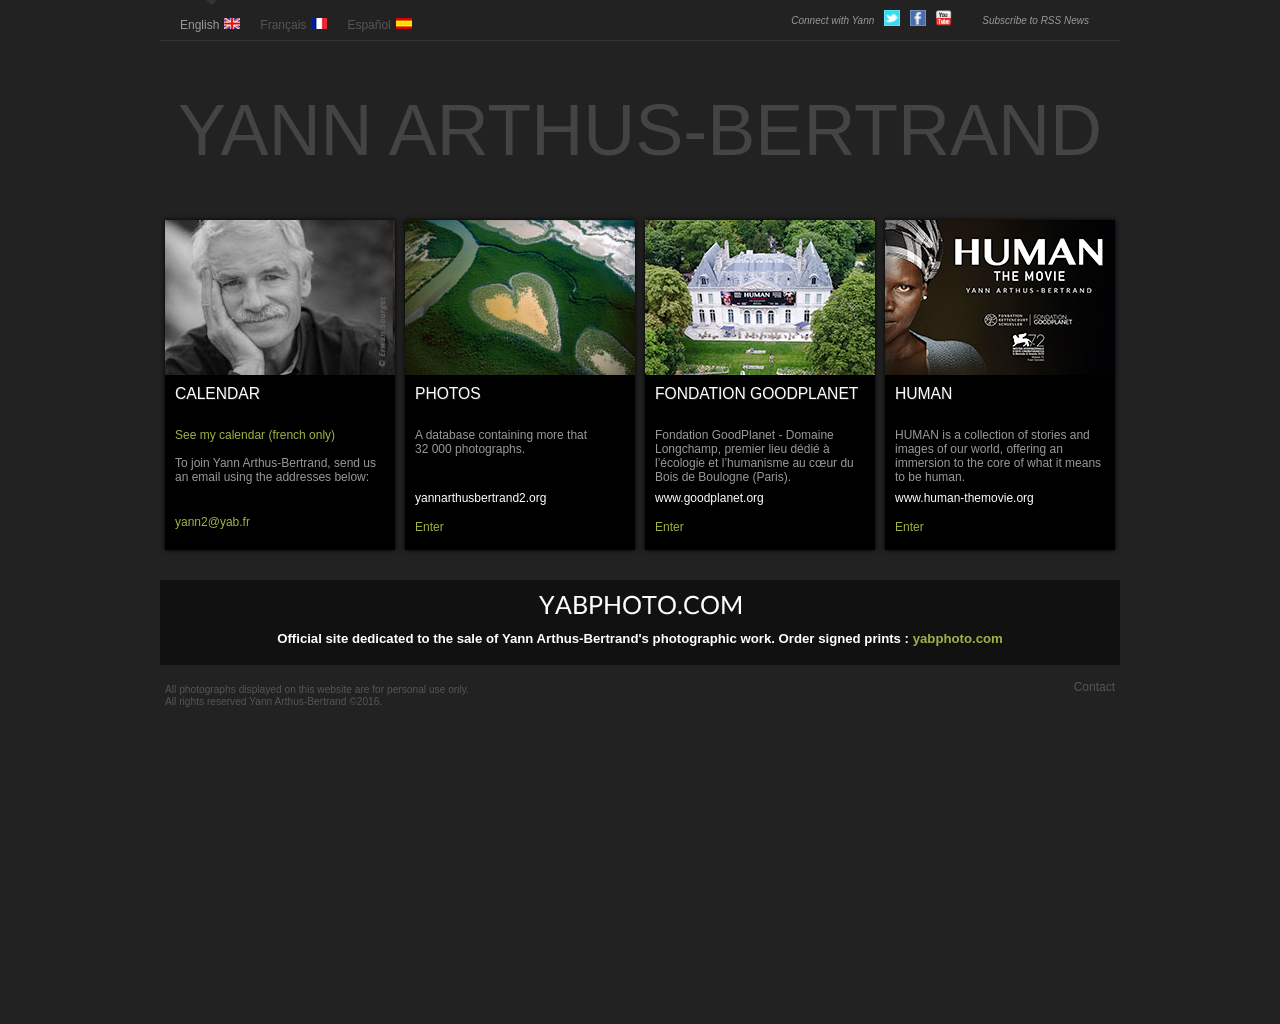 www.yannarthusbertrand.org